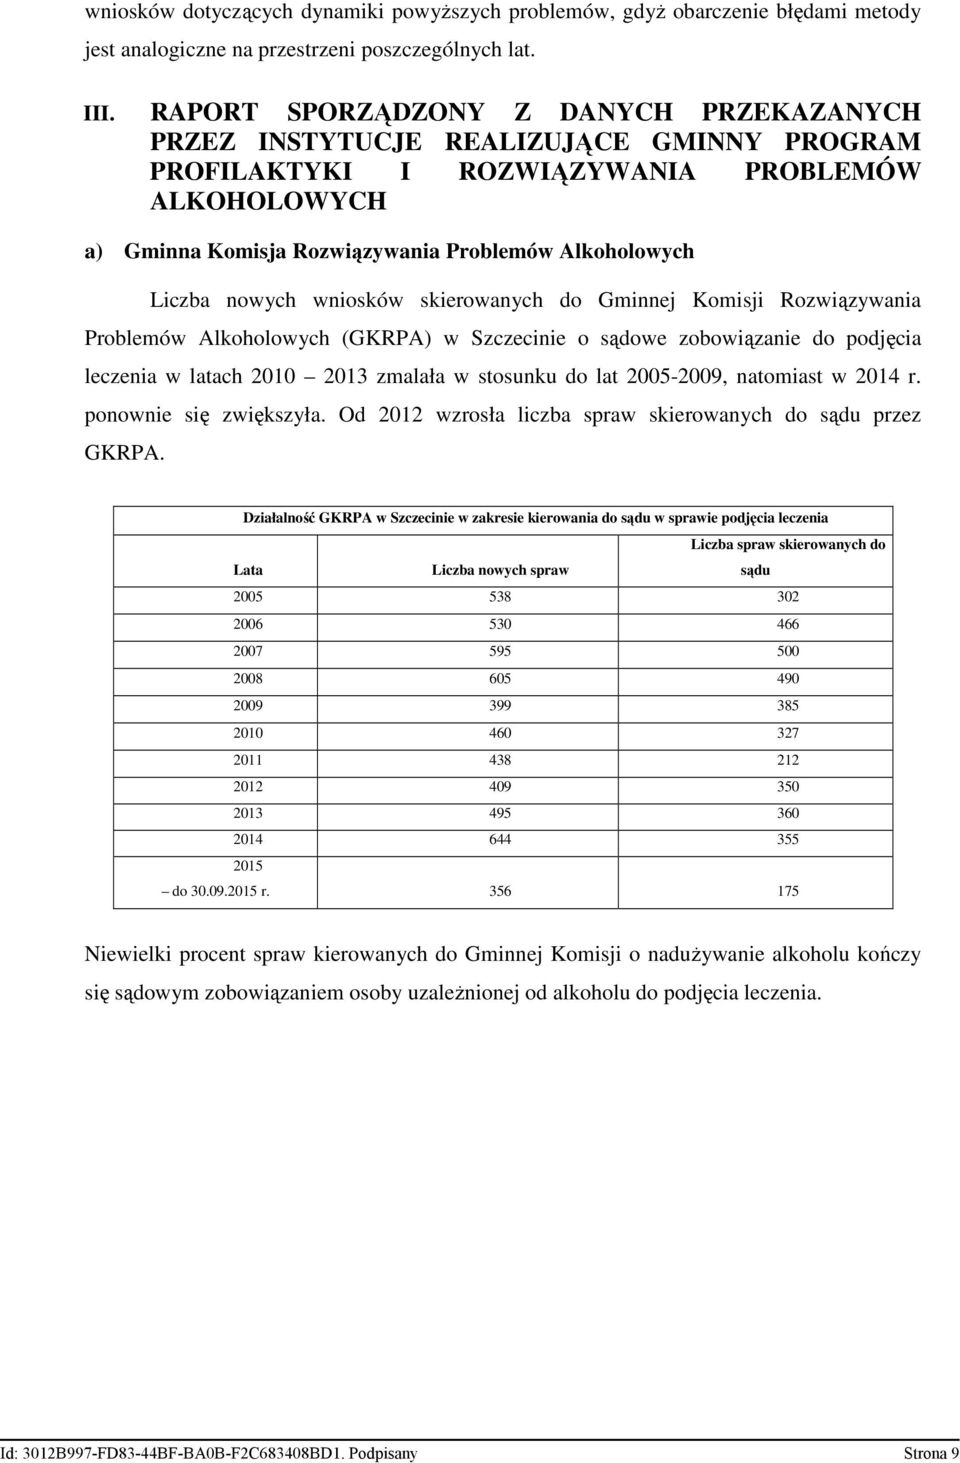 nowych wniosków skierowanych do Gminnej Komisji Rozwiązywania Problemów Alkoholowych (GKRPA) w Szczecinie o sądowe zobowiązanie do podjęcia leczenia w latach 2010 2013 zmalała w stosunku do lat